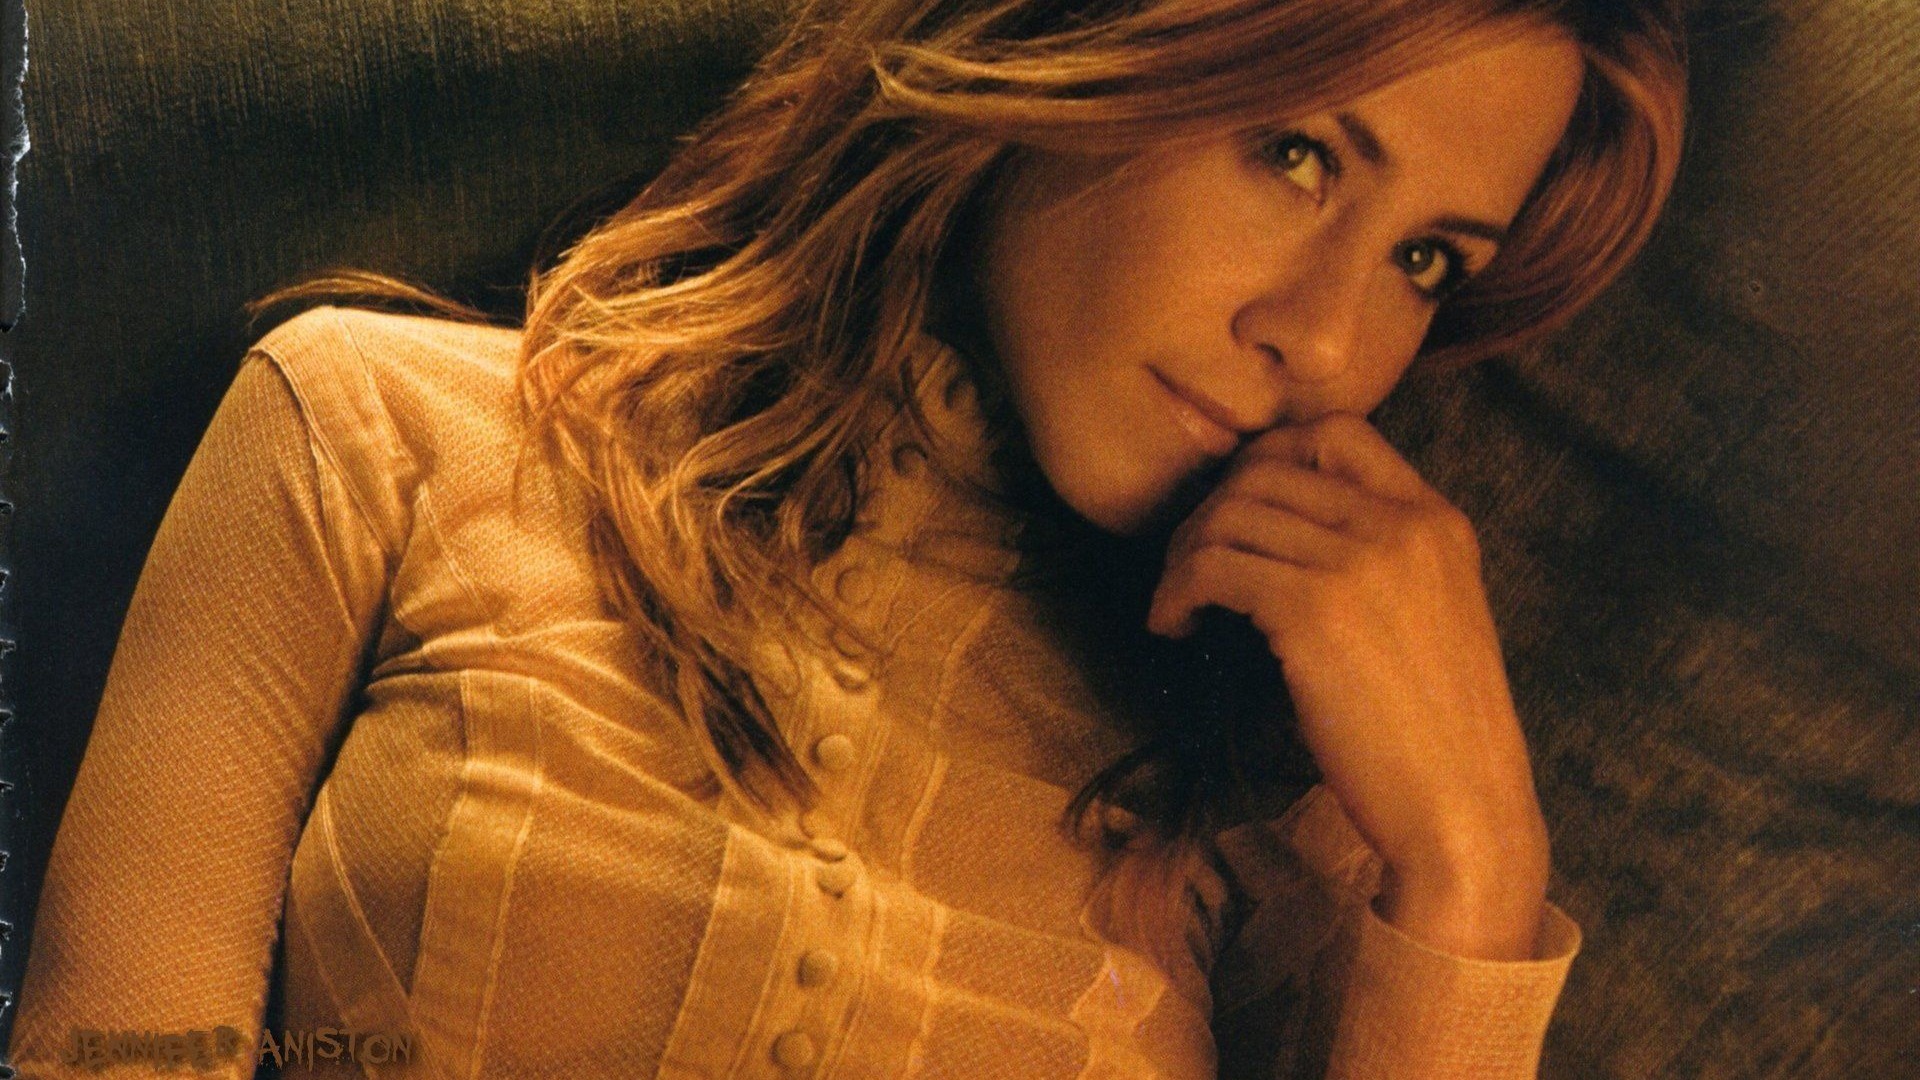 Jennifer Aniston beautiful wallpaper #4 - 1920x1080